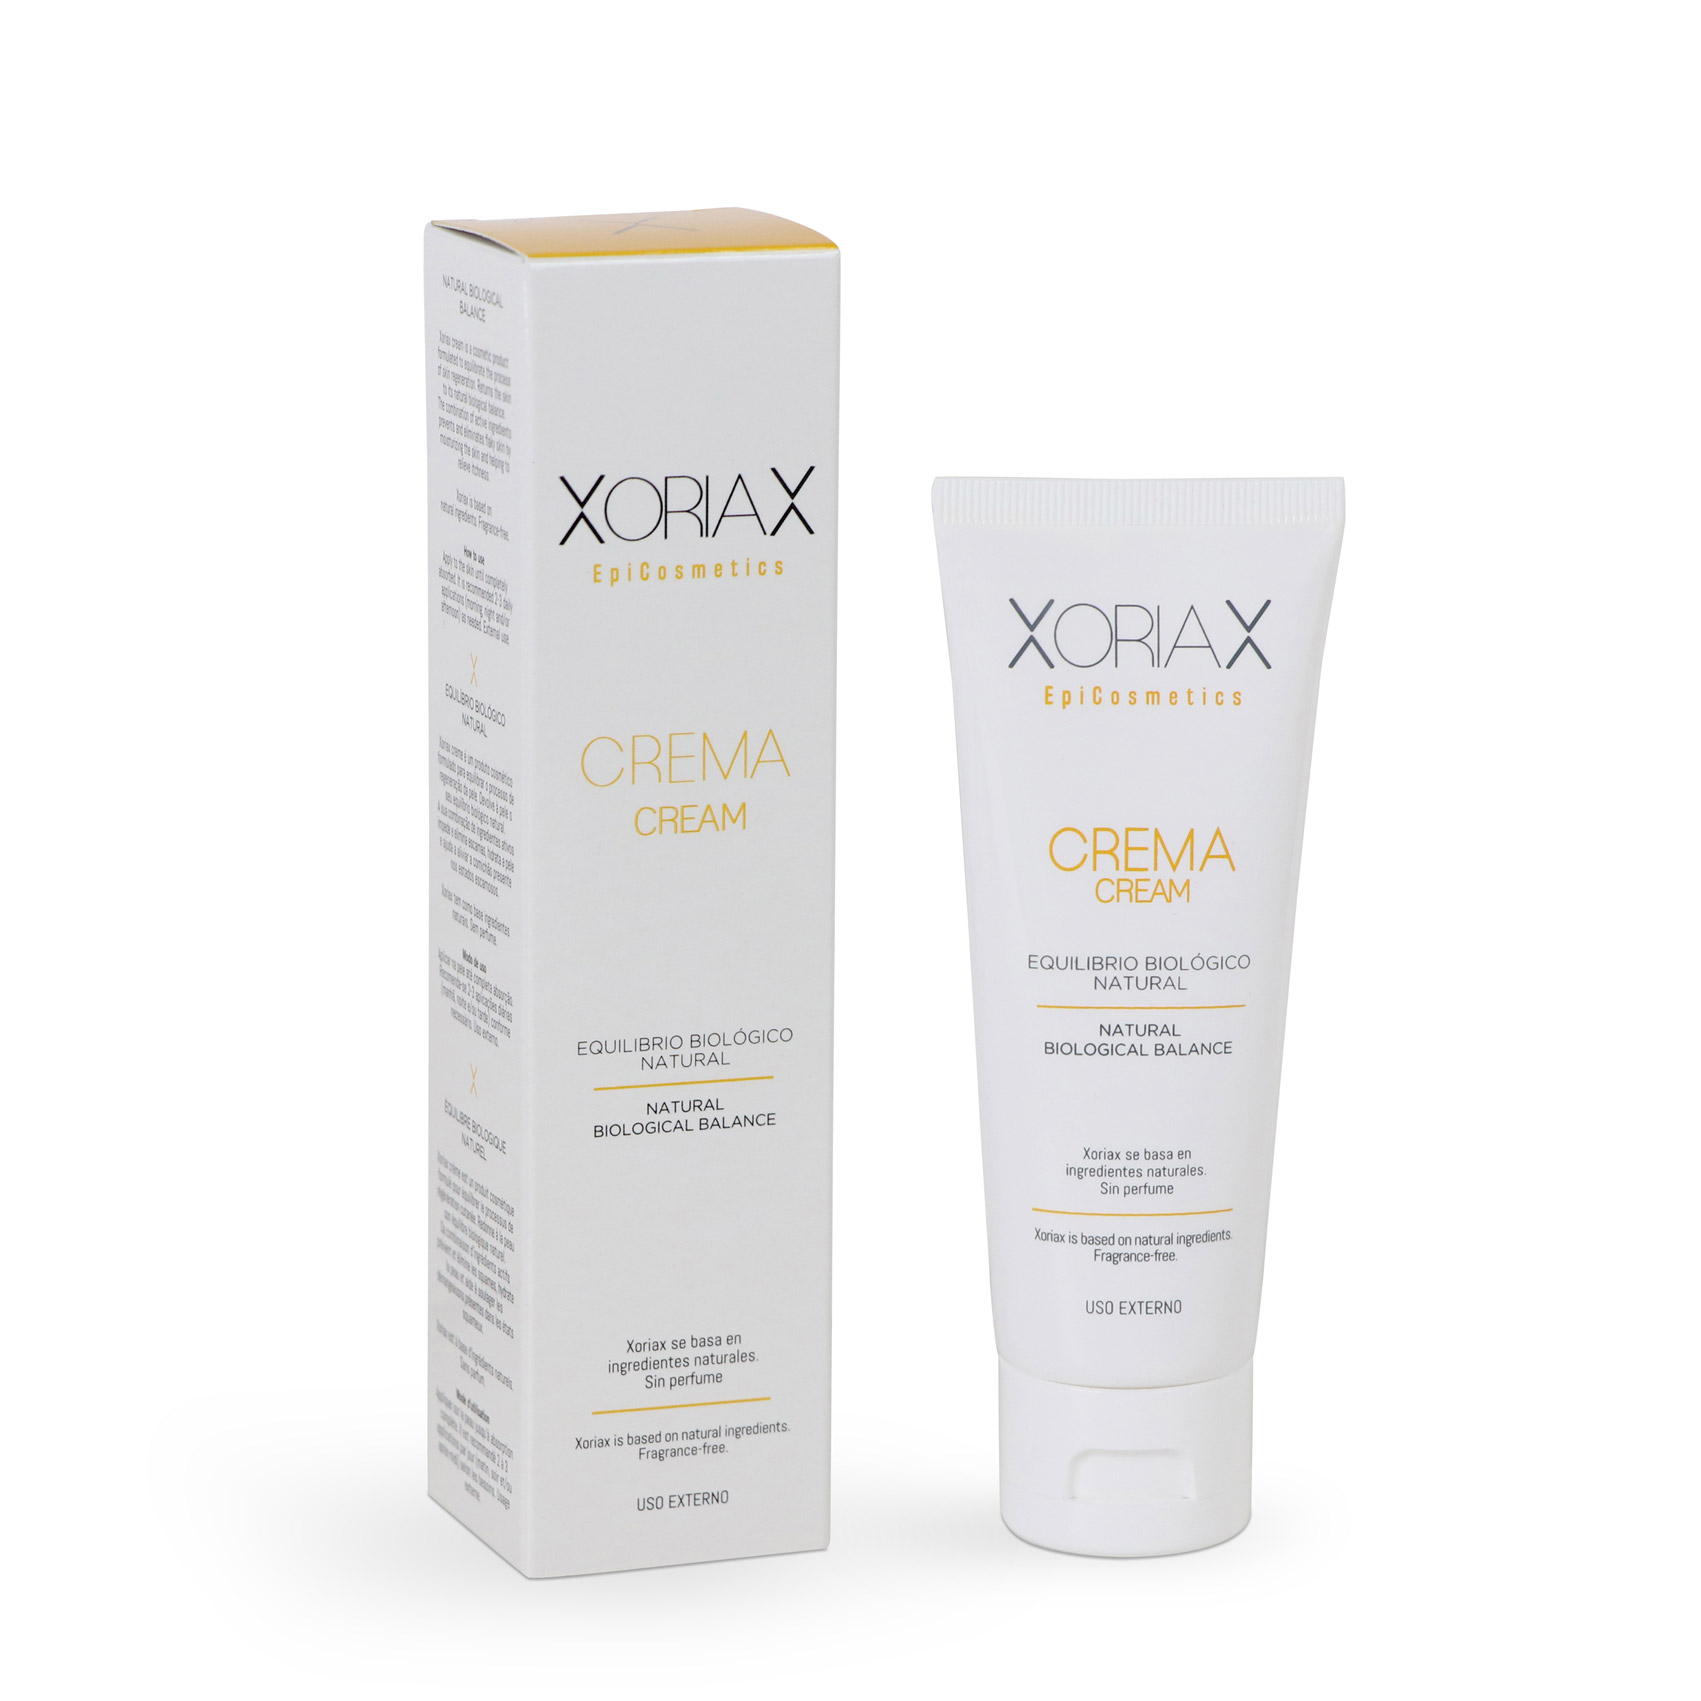 Xoriax EpiCosmetics crema para el equilibrio biológico natural. 75 ml